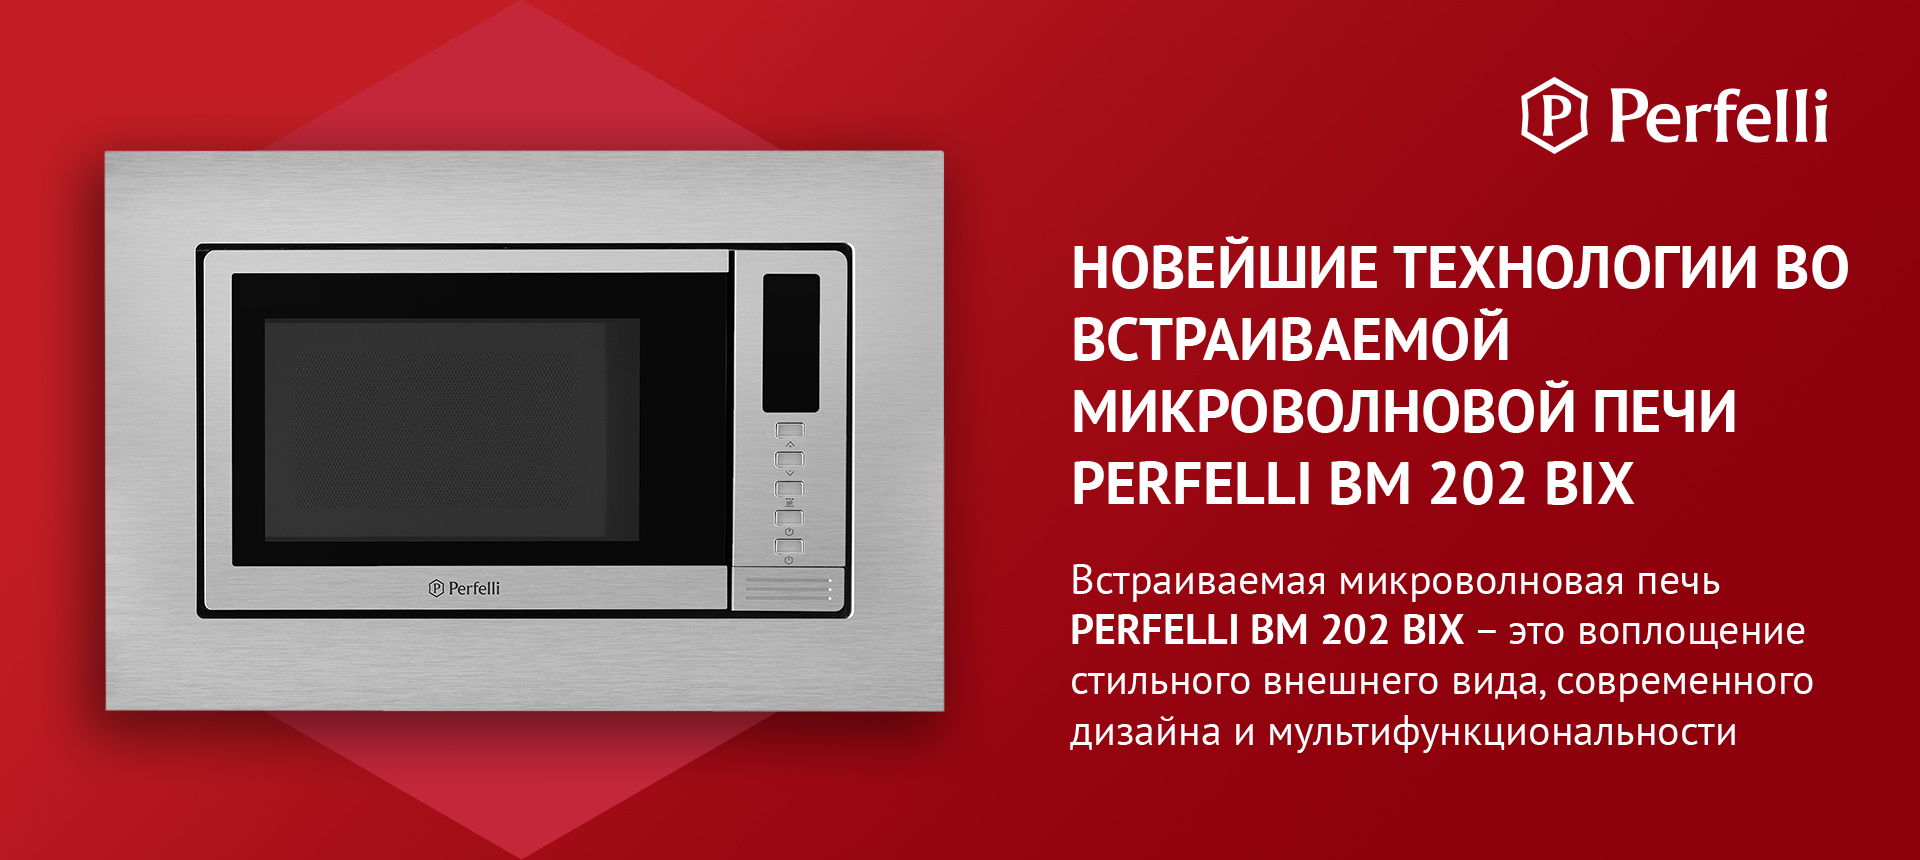 Встраиваемая микроволновая печь PERFELLI BM 202 BIX — это воплощение стильного внешнего вида, современного дизайна и мультфункциональности